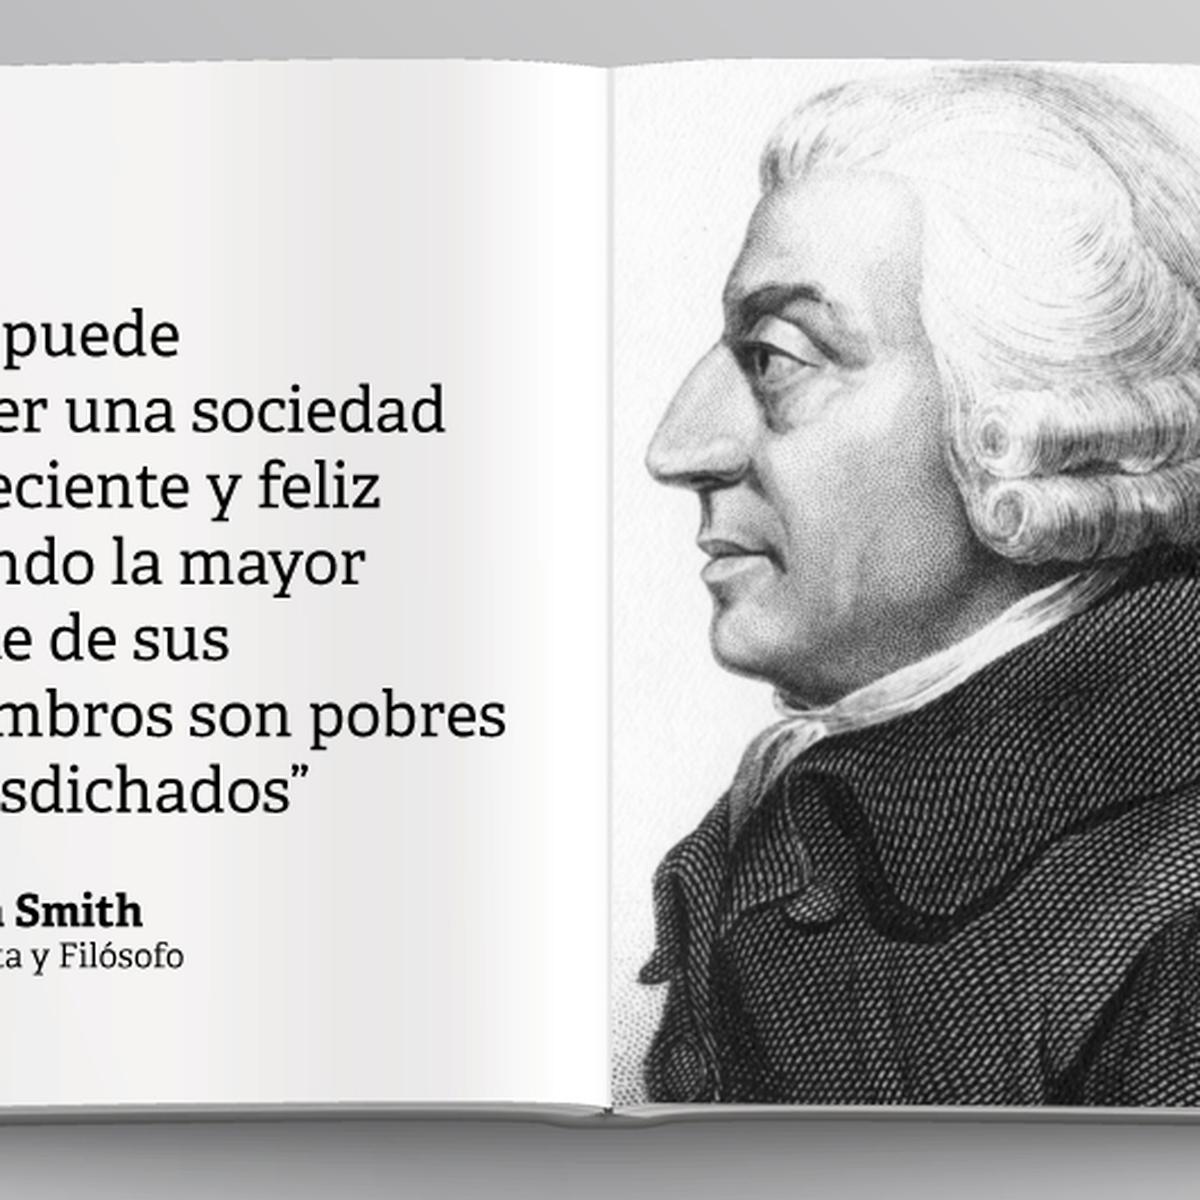 Adam Smith: Diez frases potentes del autor de 'La riqueza de las naciones'  | ECONOMIA | GESTIÓN